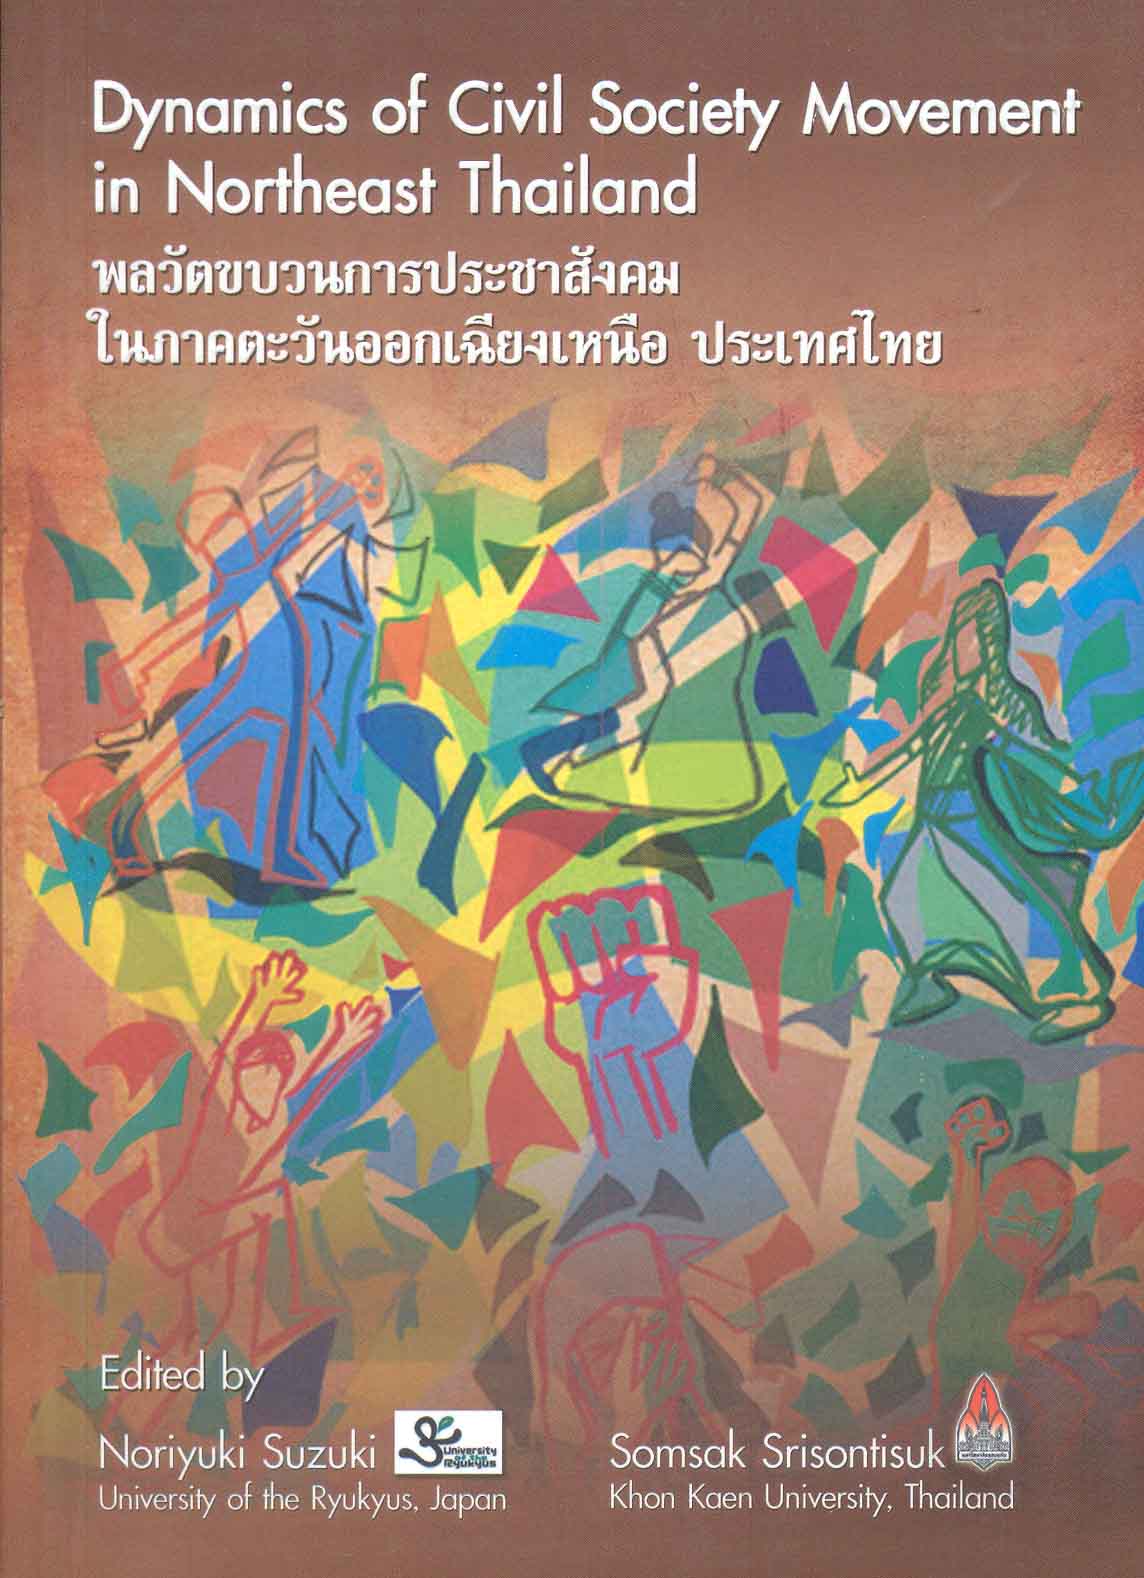 พลวัตขบวนการประชาสังคมในภาคตะวันออกเฉียงเหนือ ประเทศไทย = Dynamics of civil society movement in Northeast Thailand